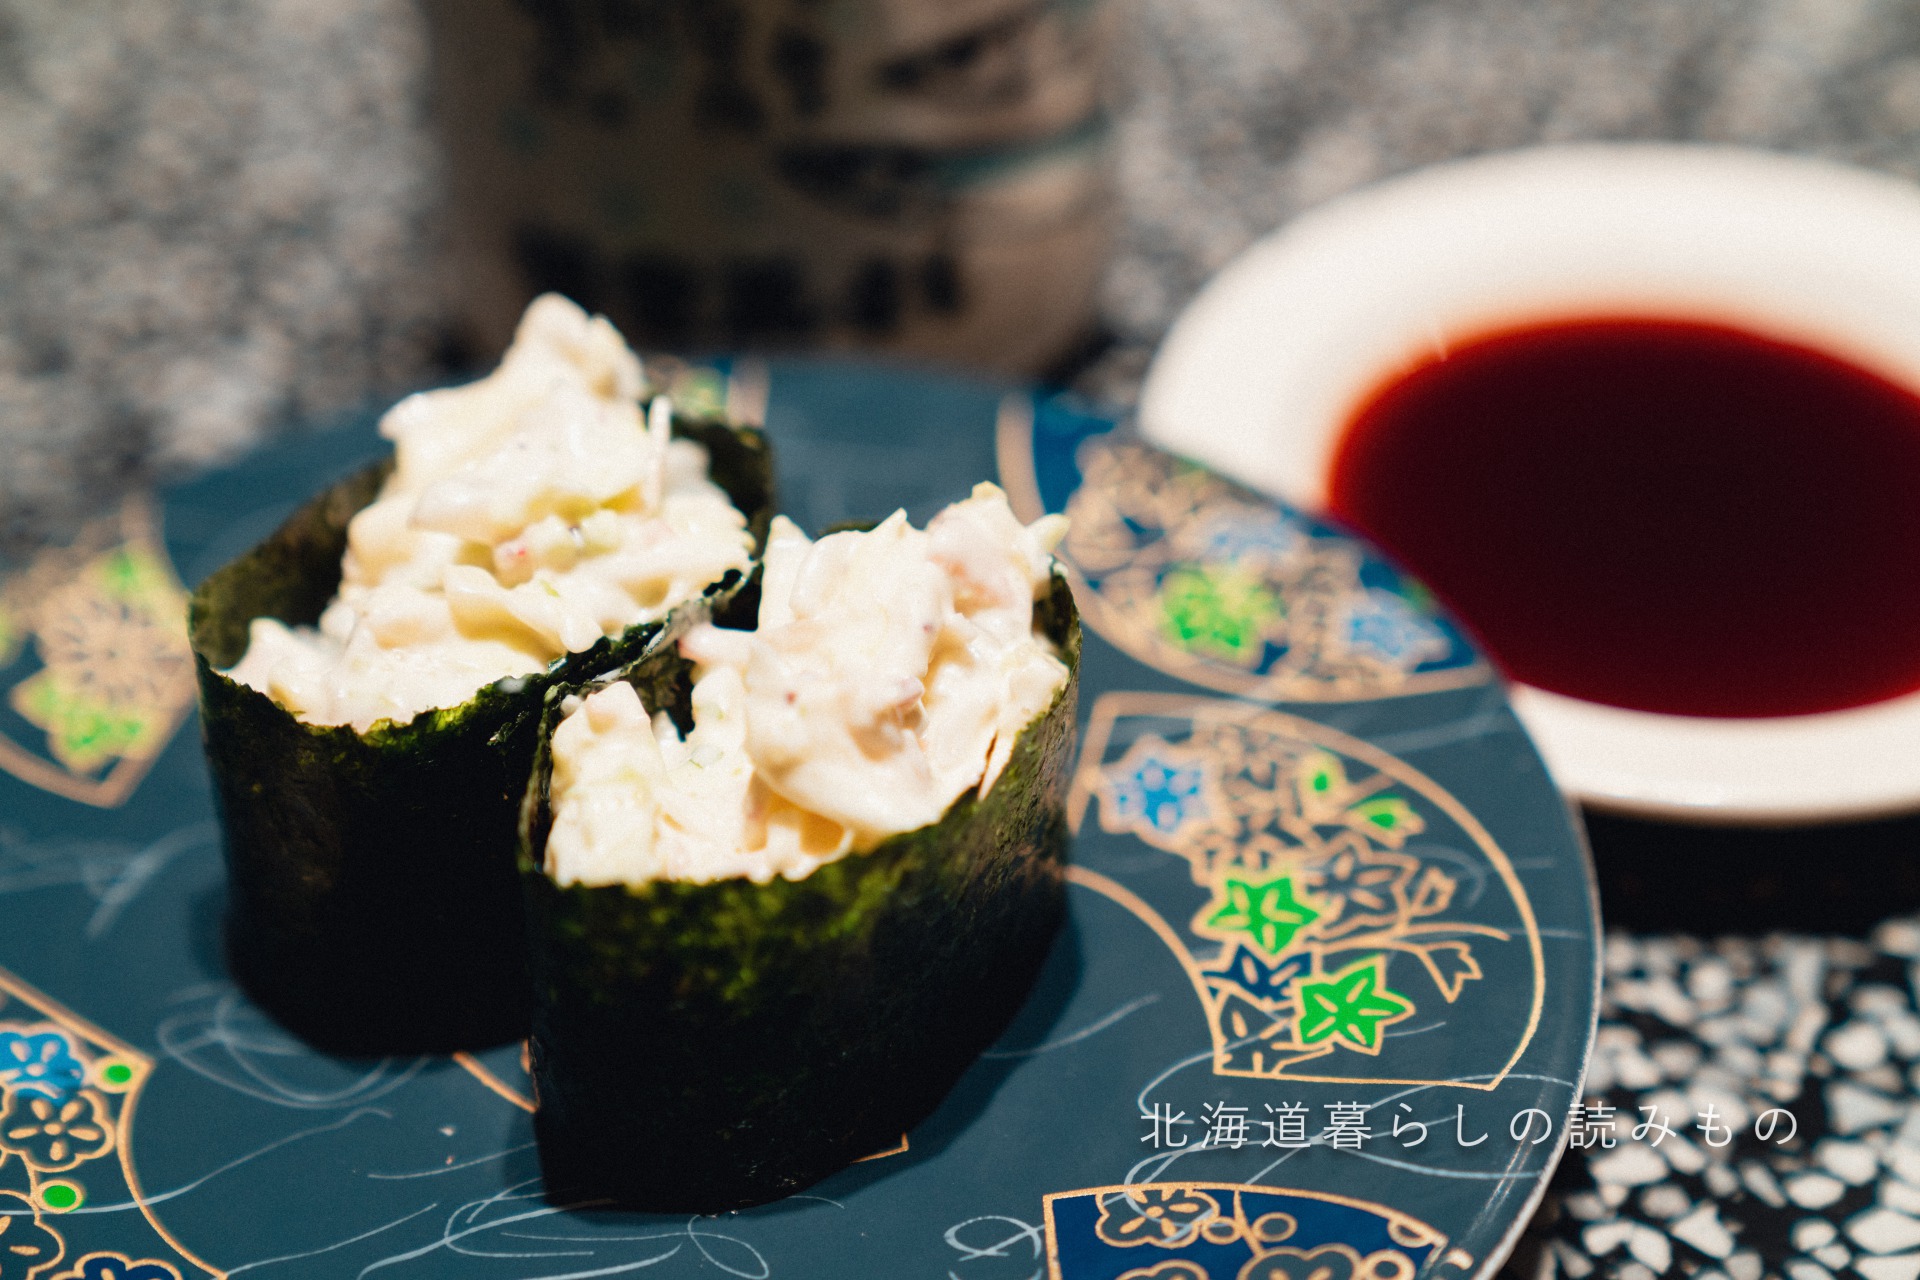 回転寿司 根室花まるのメニュー「海鮮サラダ」の写真